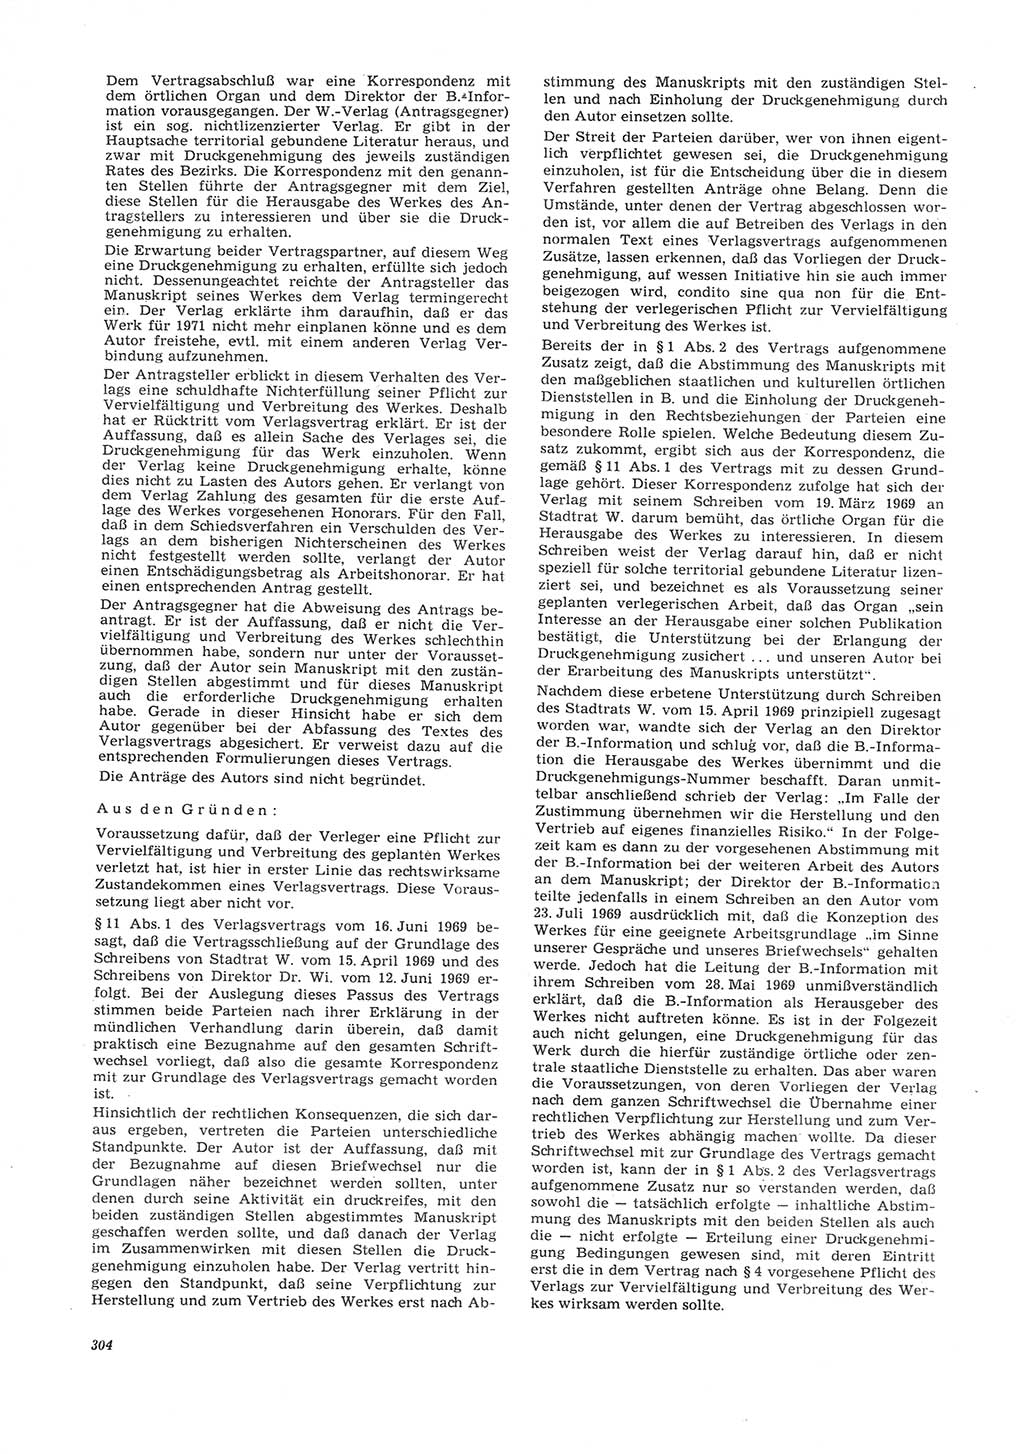 Neue Justiz (NJ), Zeitschrift für Recht und Rechtswissenschaft [Deutsche Demokratische Republik (DDR)], 26. Jahrgang 1972, Seite 304 (NJ DDR 1972, S. 304)